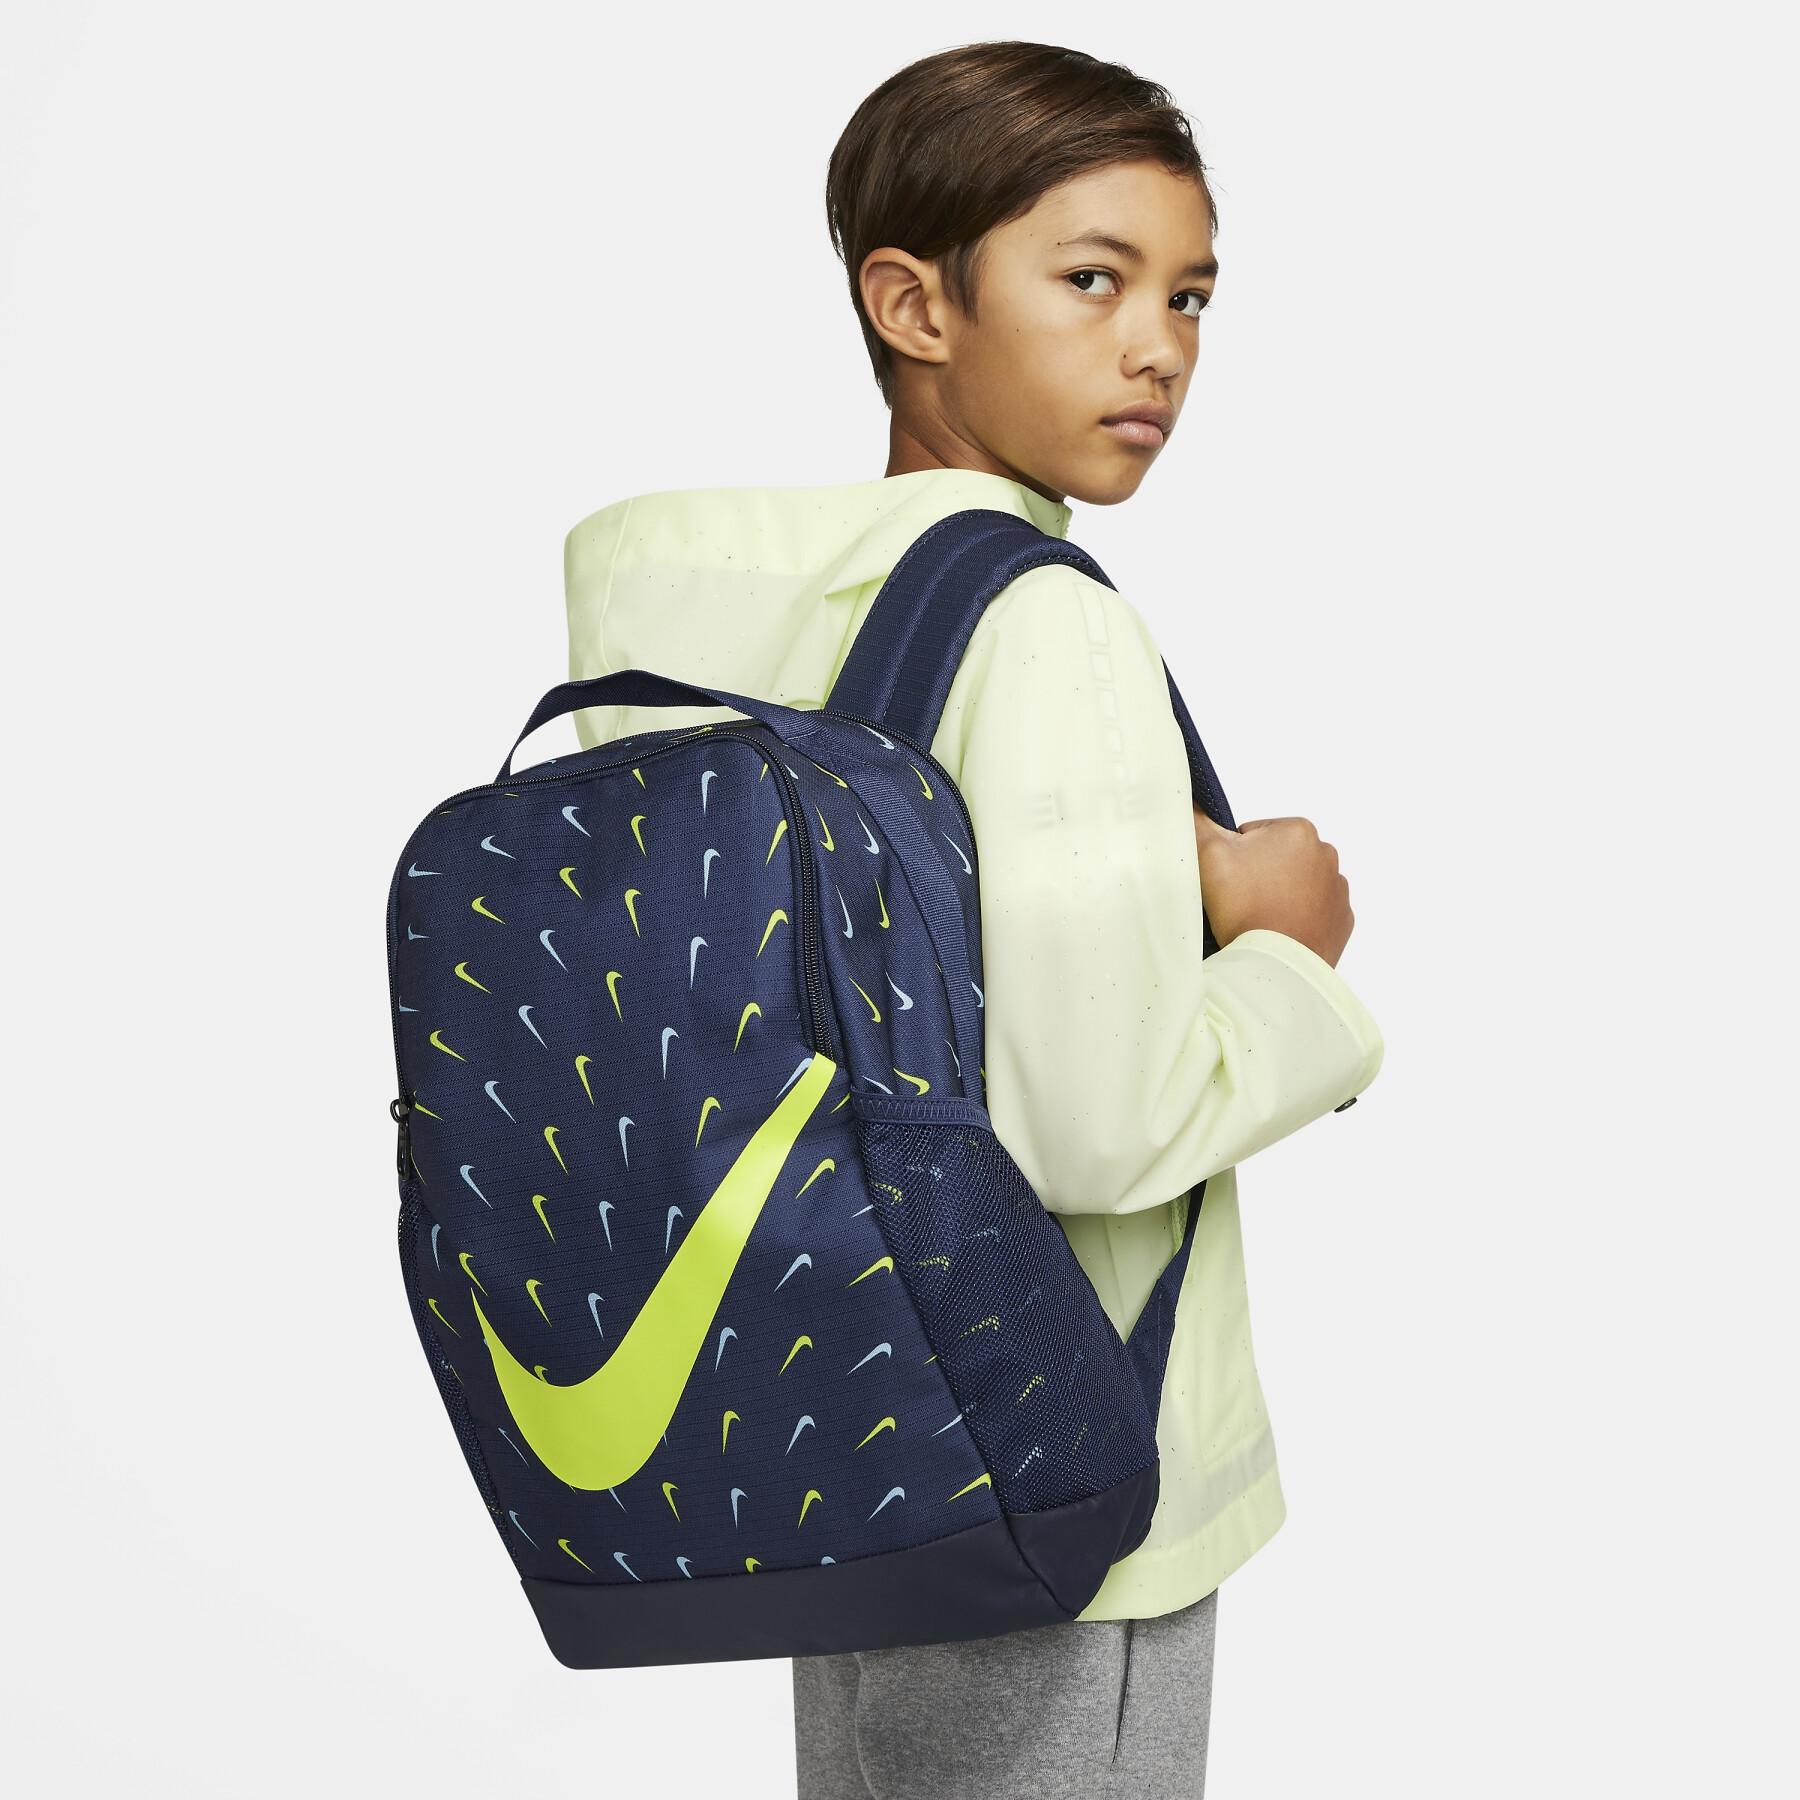 Plecak dla dzieci Nike Brasilia